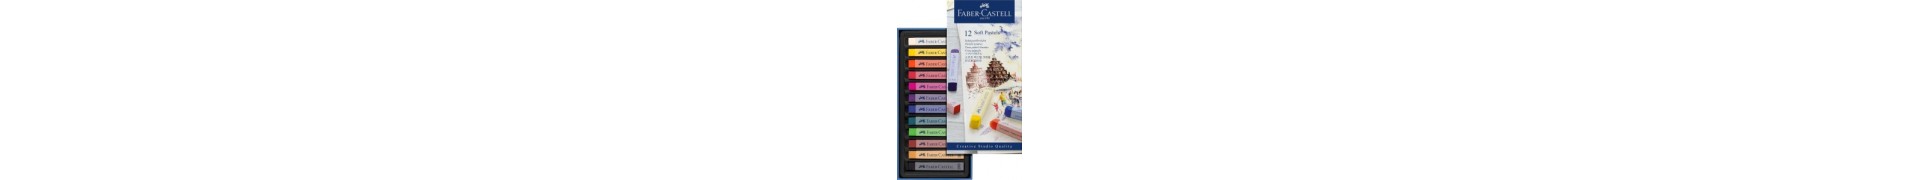 Boite pastel sec FABER & CASTELL Créative studio - 12 Pastels sec - 128312 